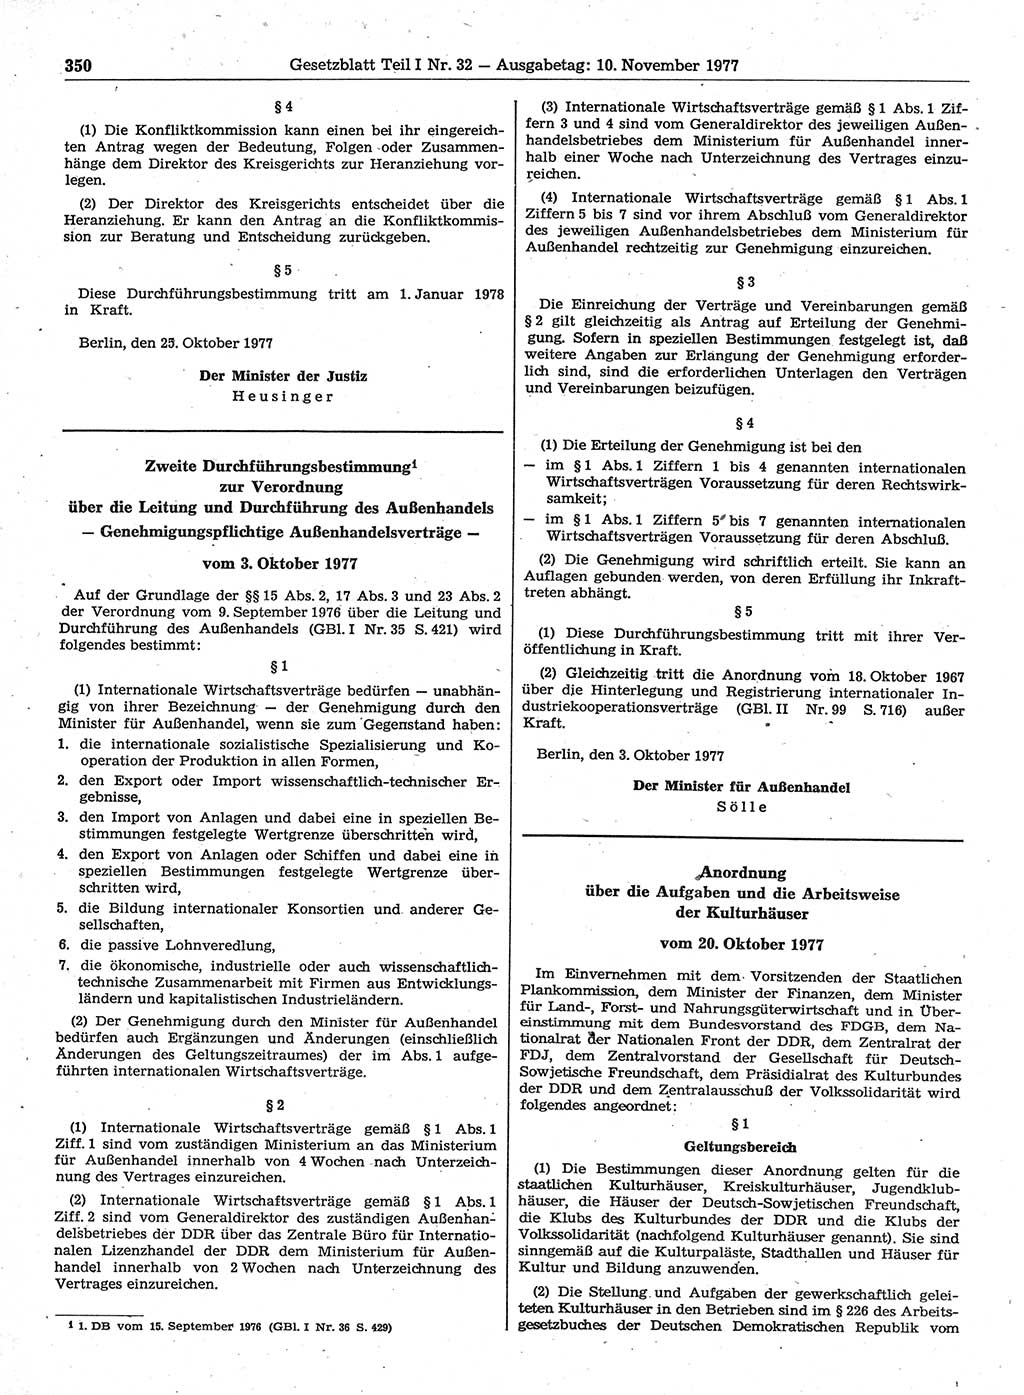 Gesetzblatt (GBl.) der Deutschen Demokratischen Republik (DDR) Teil Ⅰ 1977, Seite 350 (GBl. DDR Ⅰ 1977, S. 350)